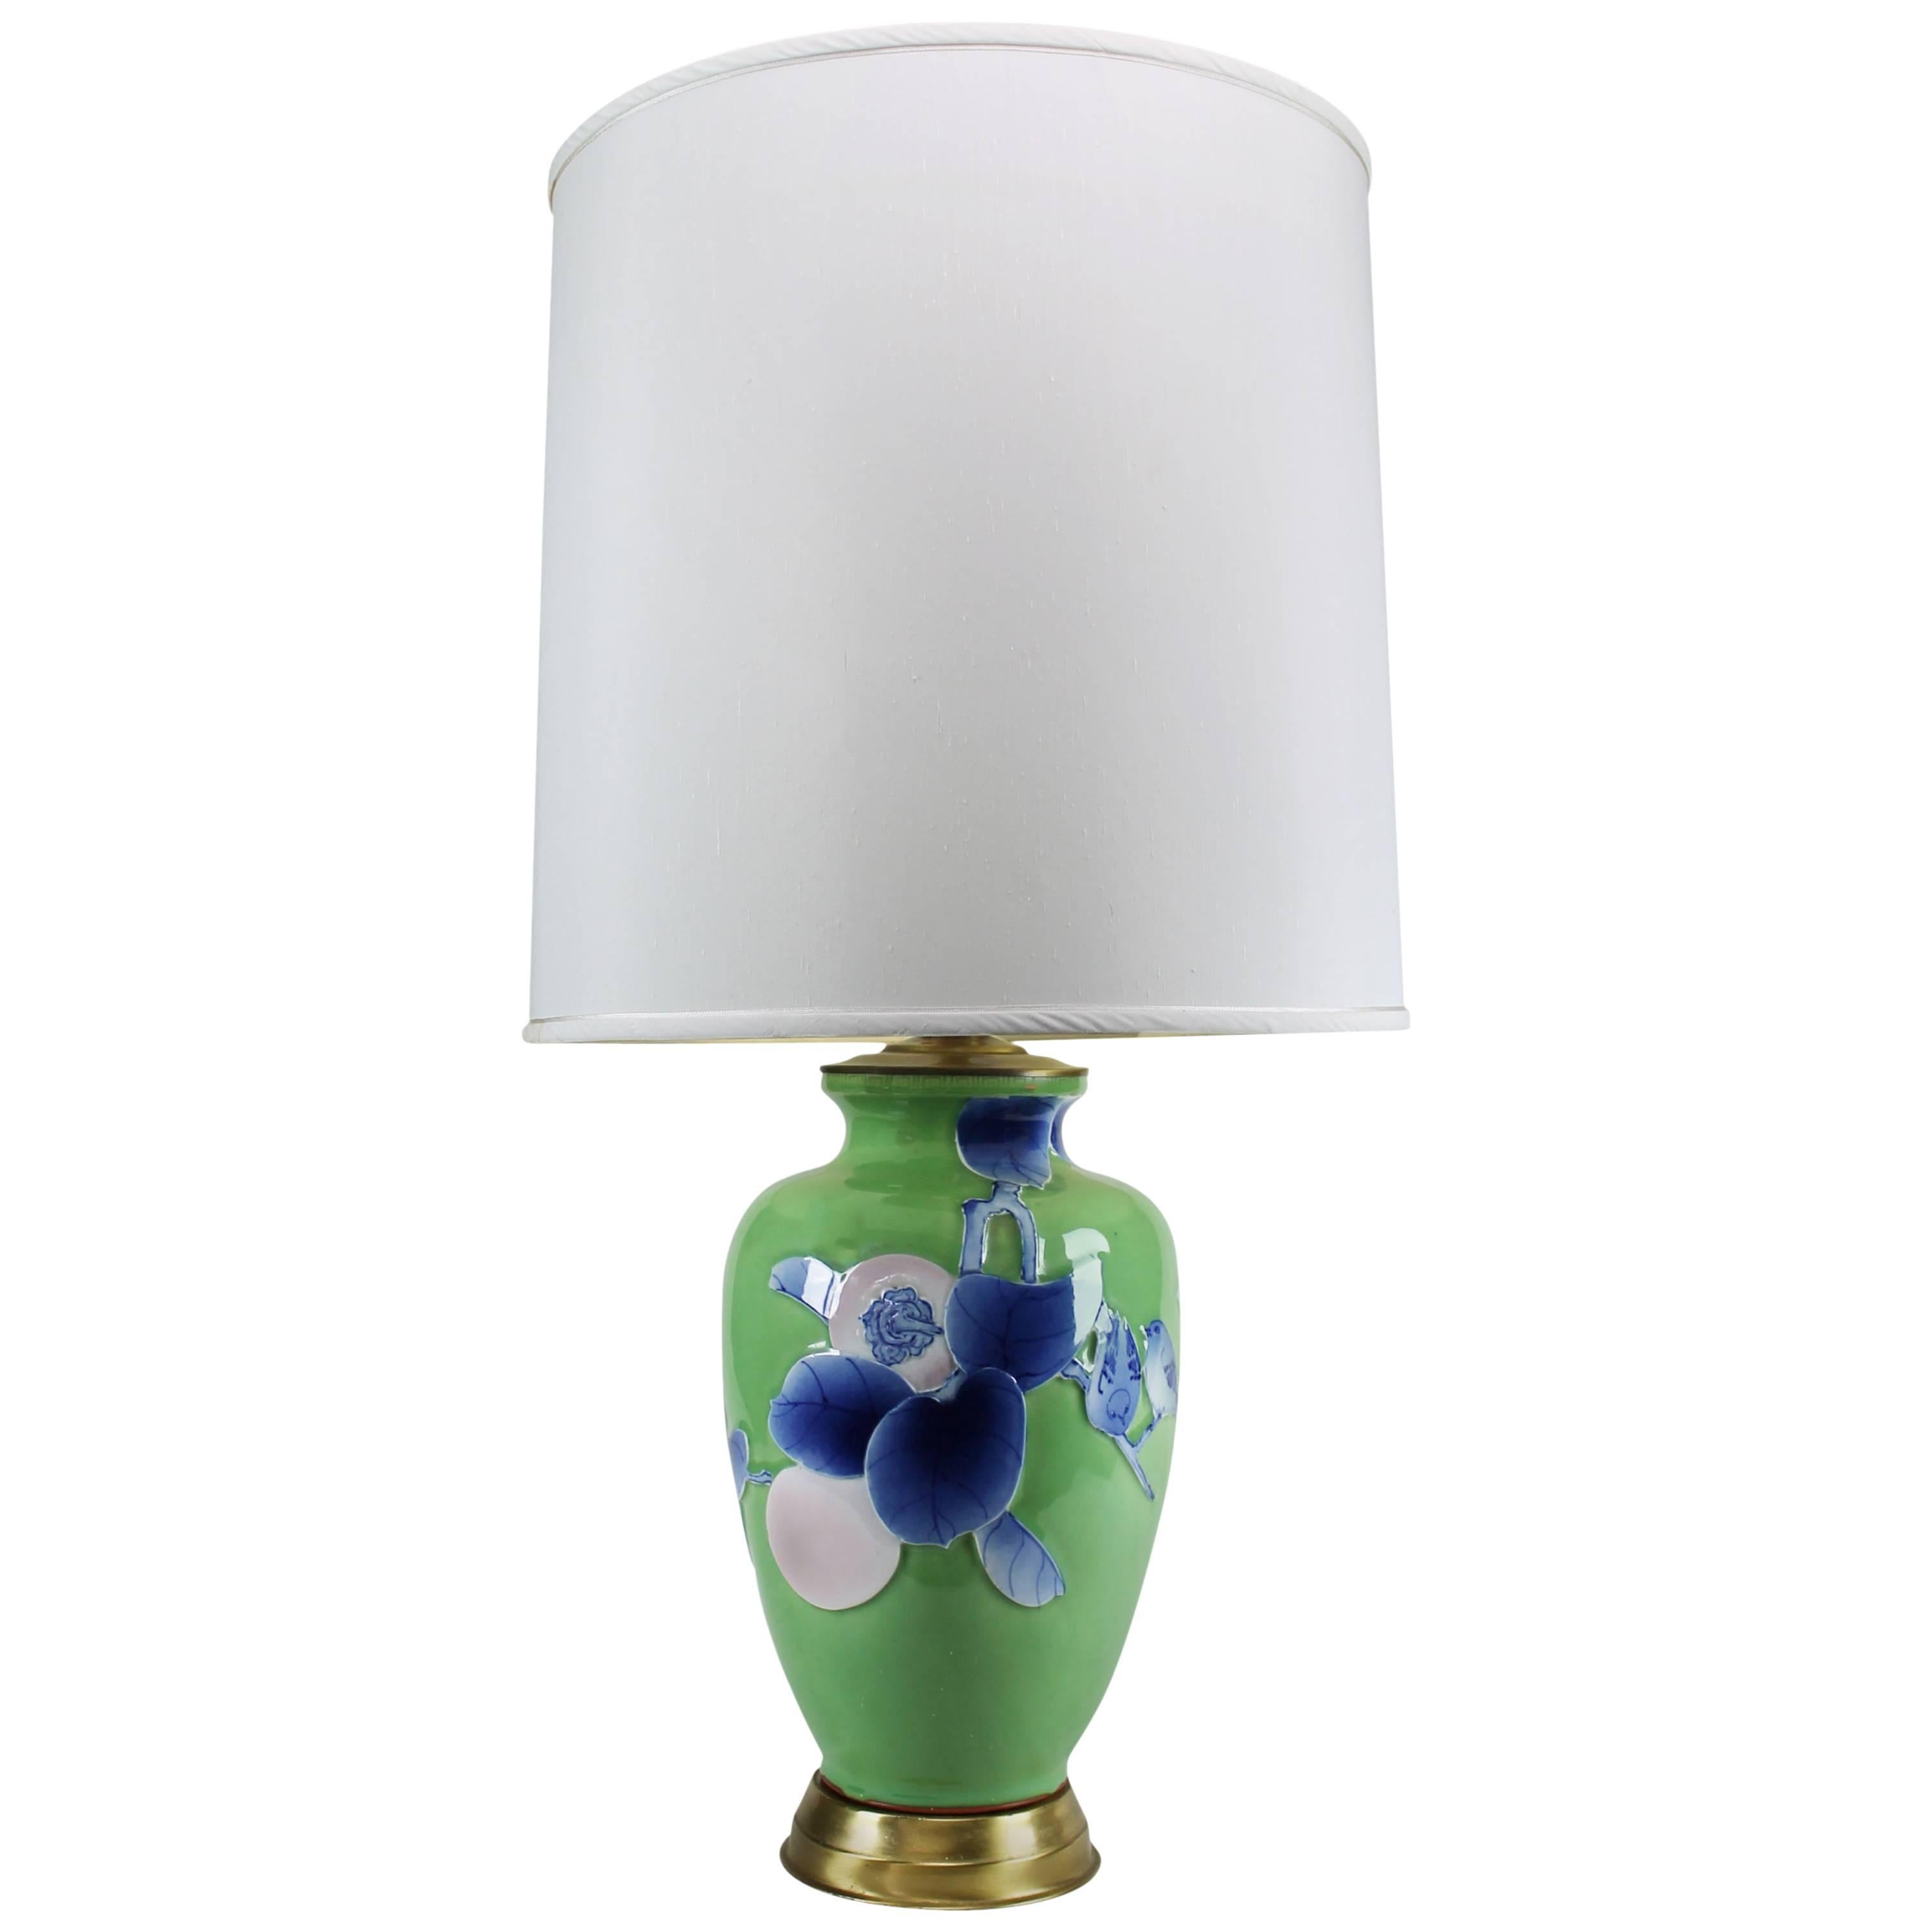 Vintage Large Ceramic Green Vase Lamp with Blue & Lavender Bird & Fruit Design